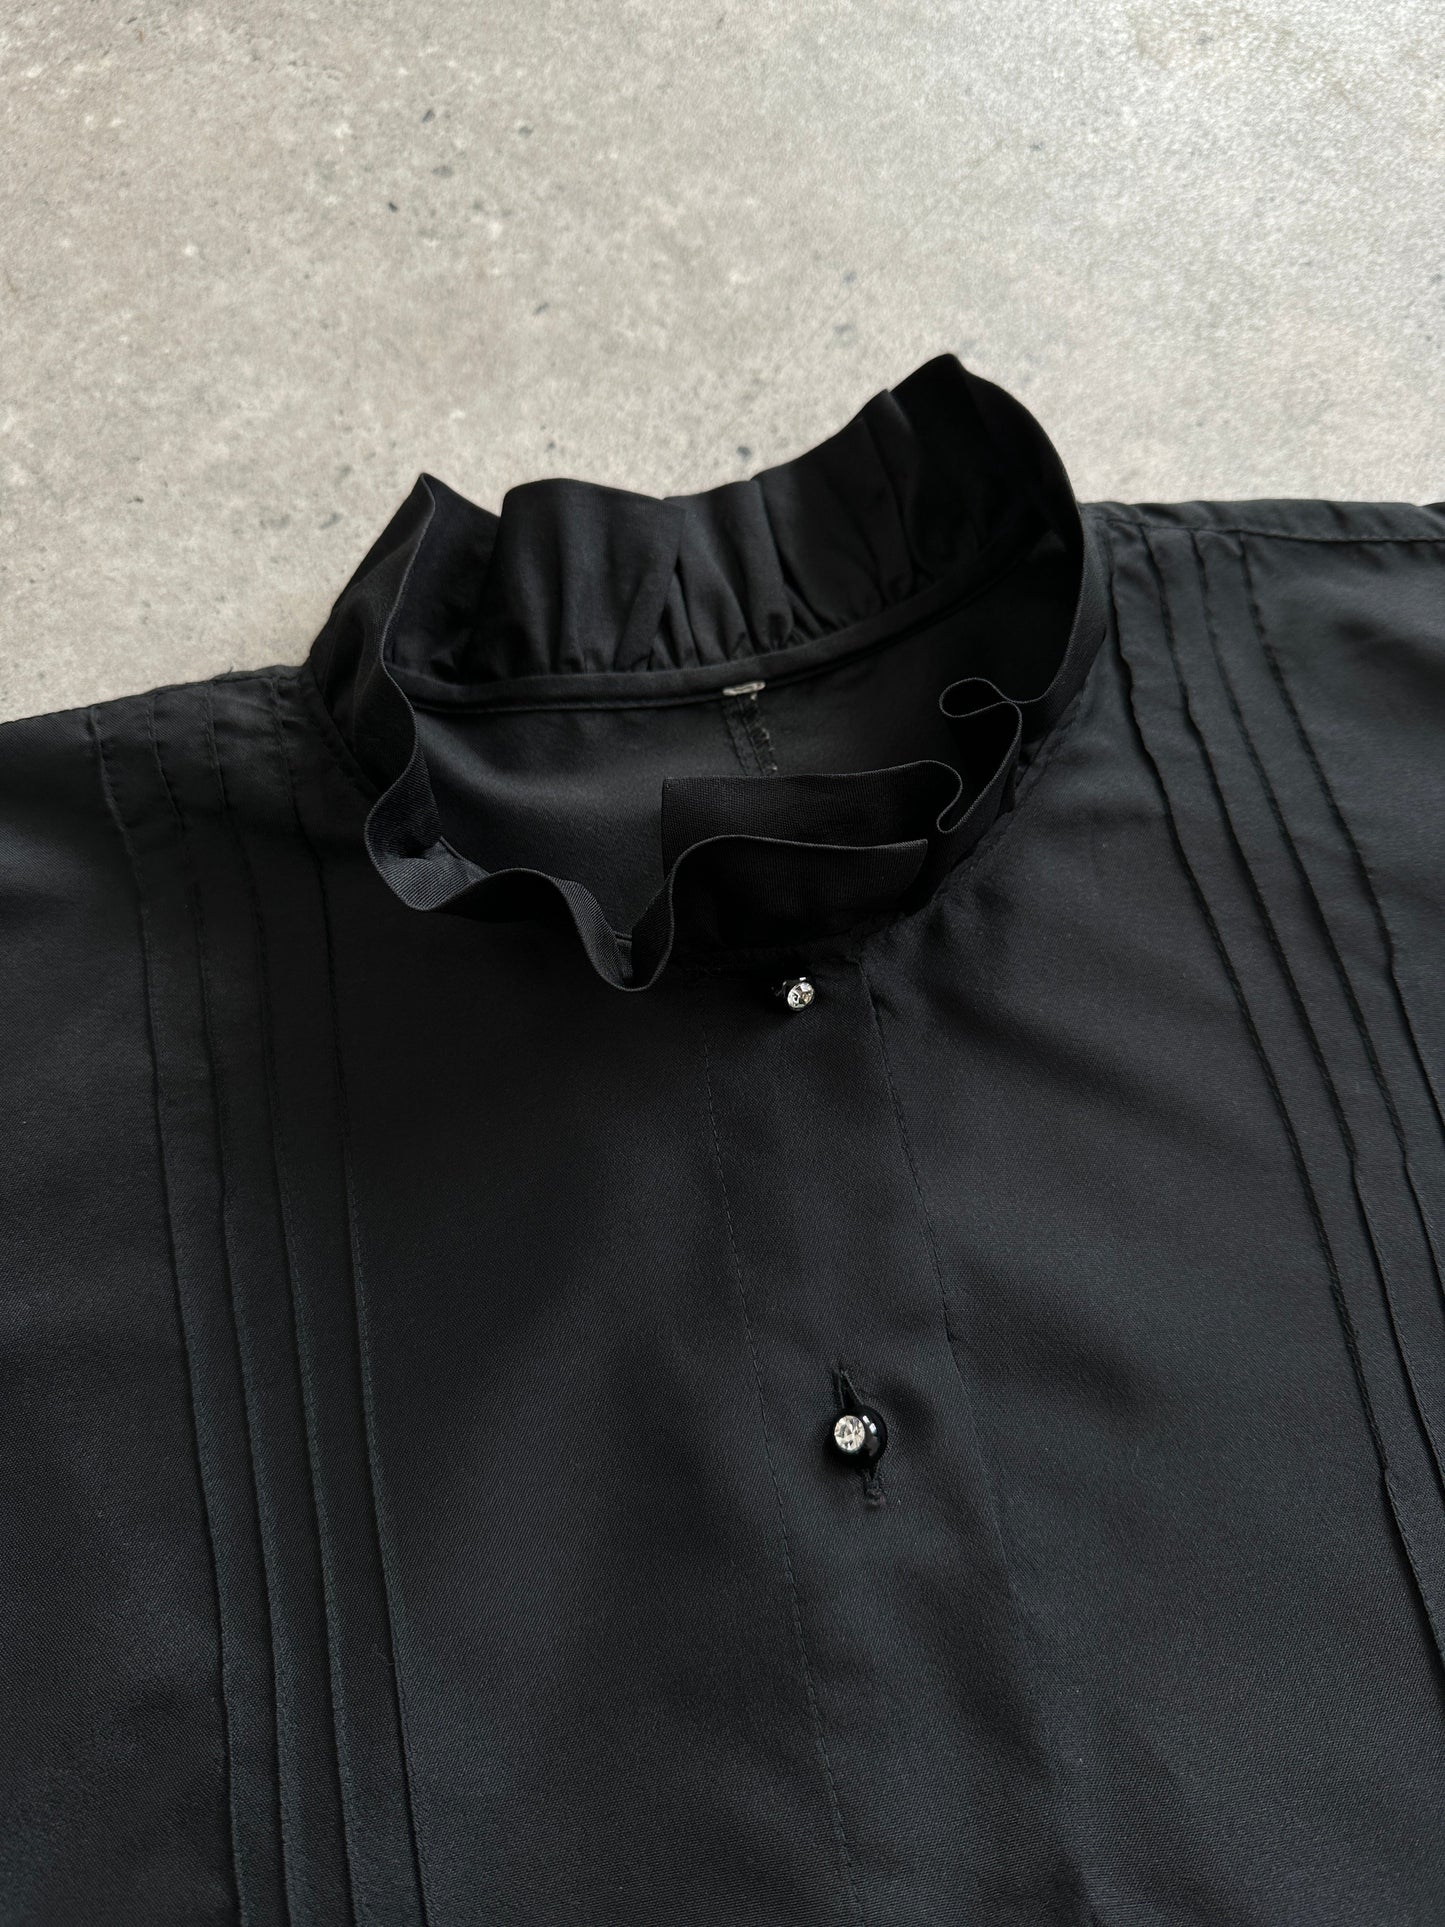 Vintage Puff Sleeve Pleated Shirt - M